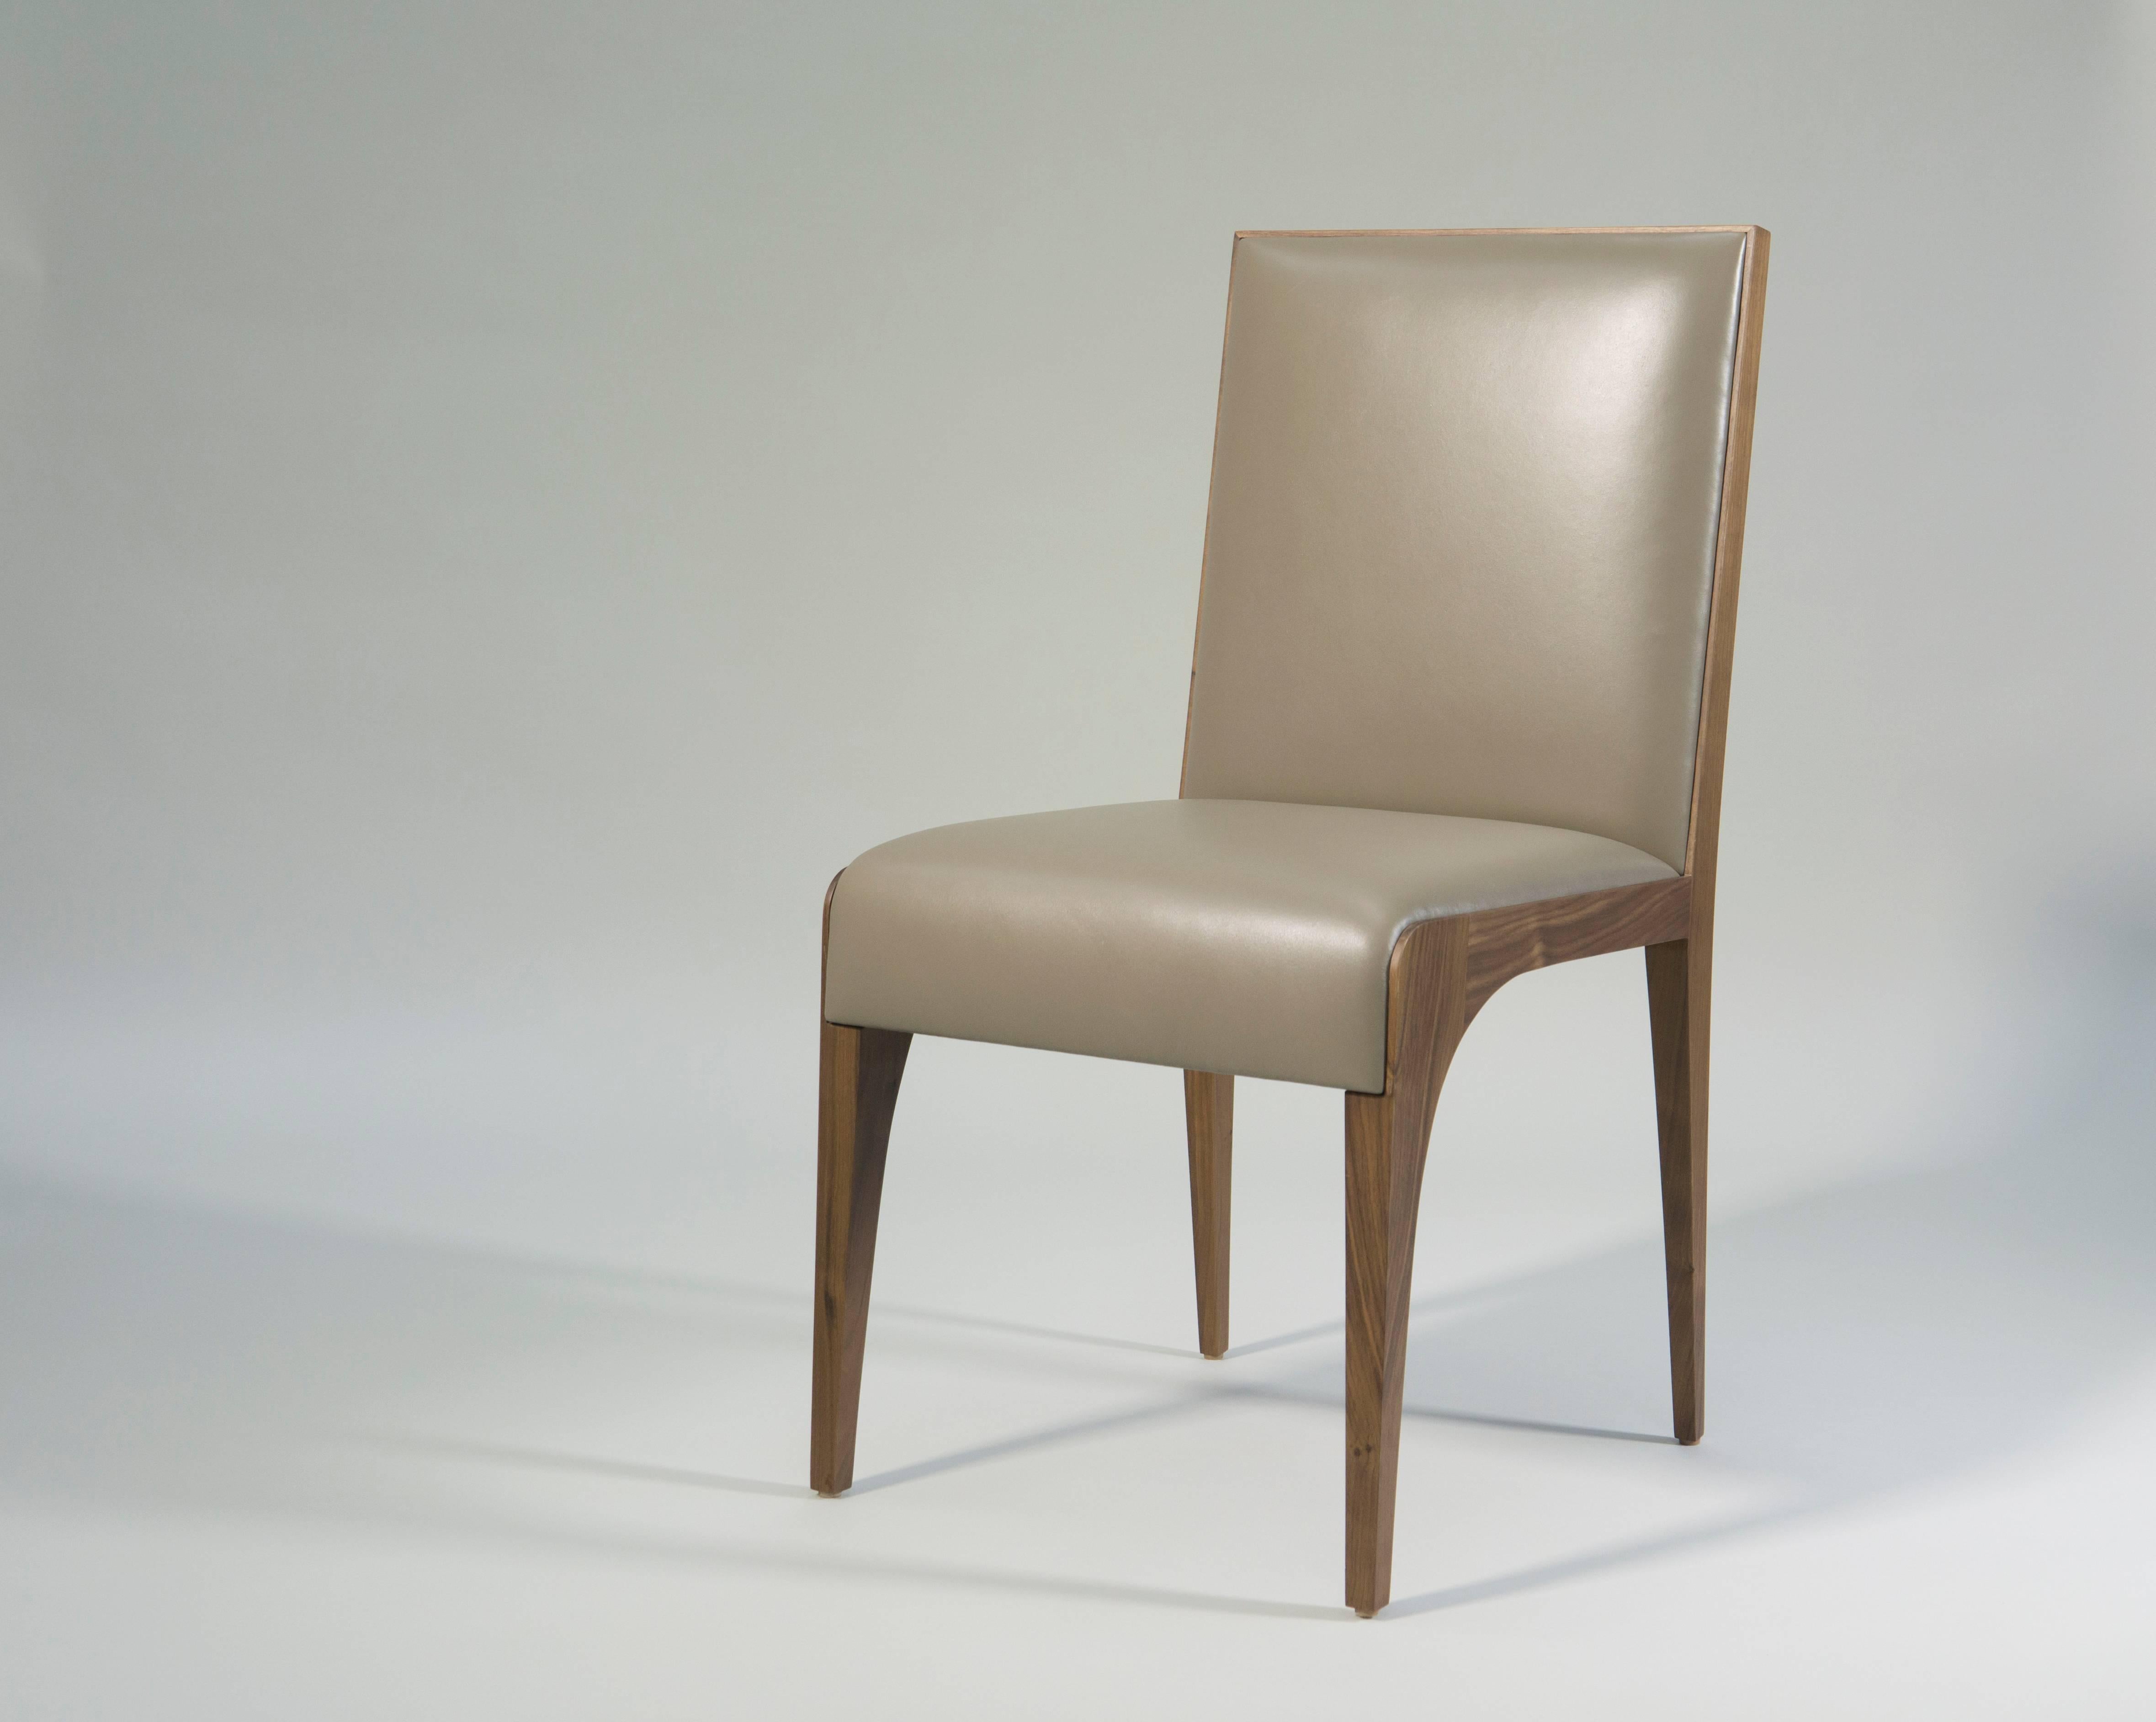 Paire d'élégantes chaises de salle à manger ou d'appoint de Tinatin Kilaberidze.

Fabriquées dans son bois de noyer préféré et revêtues de cuir, leur belle forme et la finesse de leur fabrication rendent ces chaises intemporelles.
Les chaises de